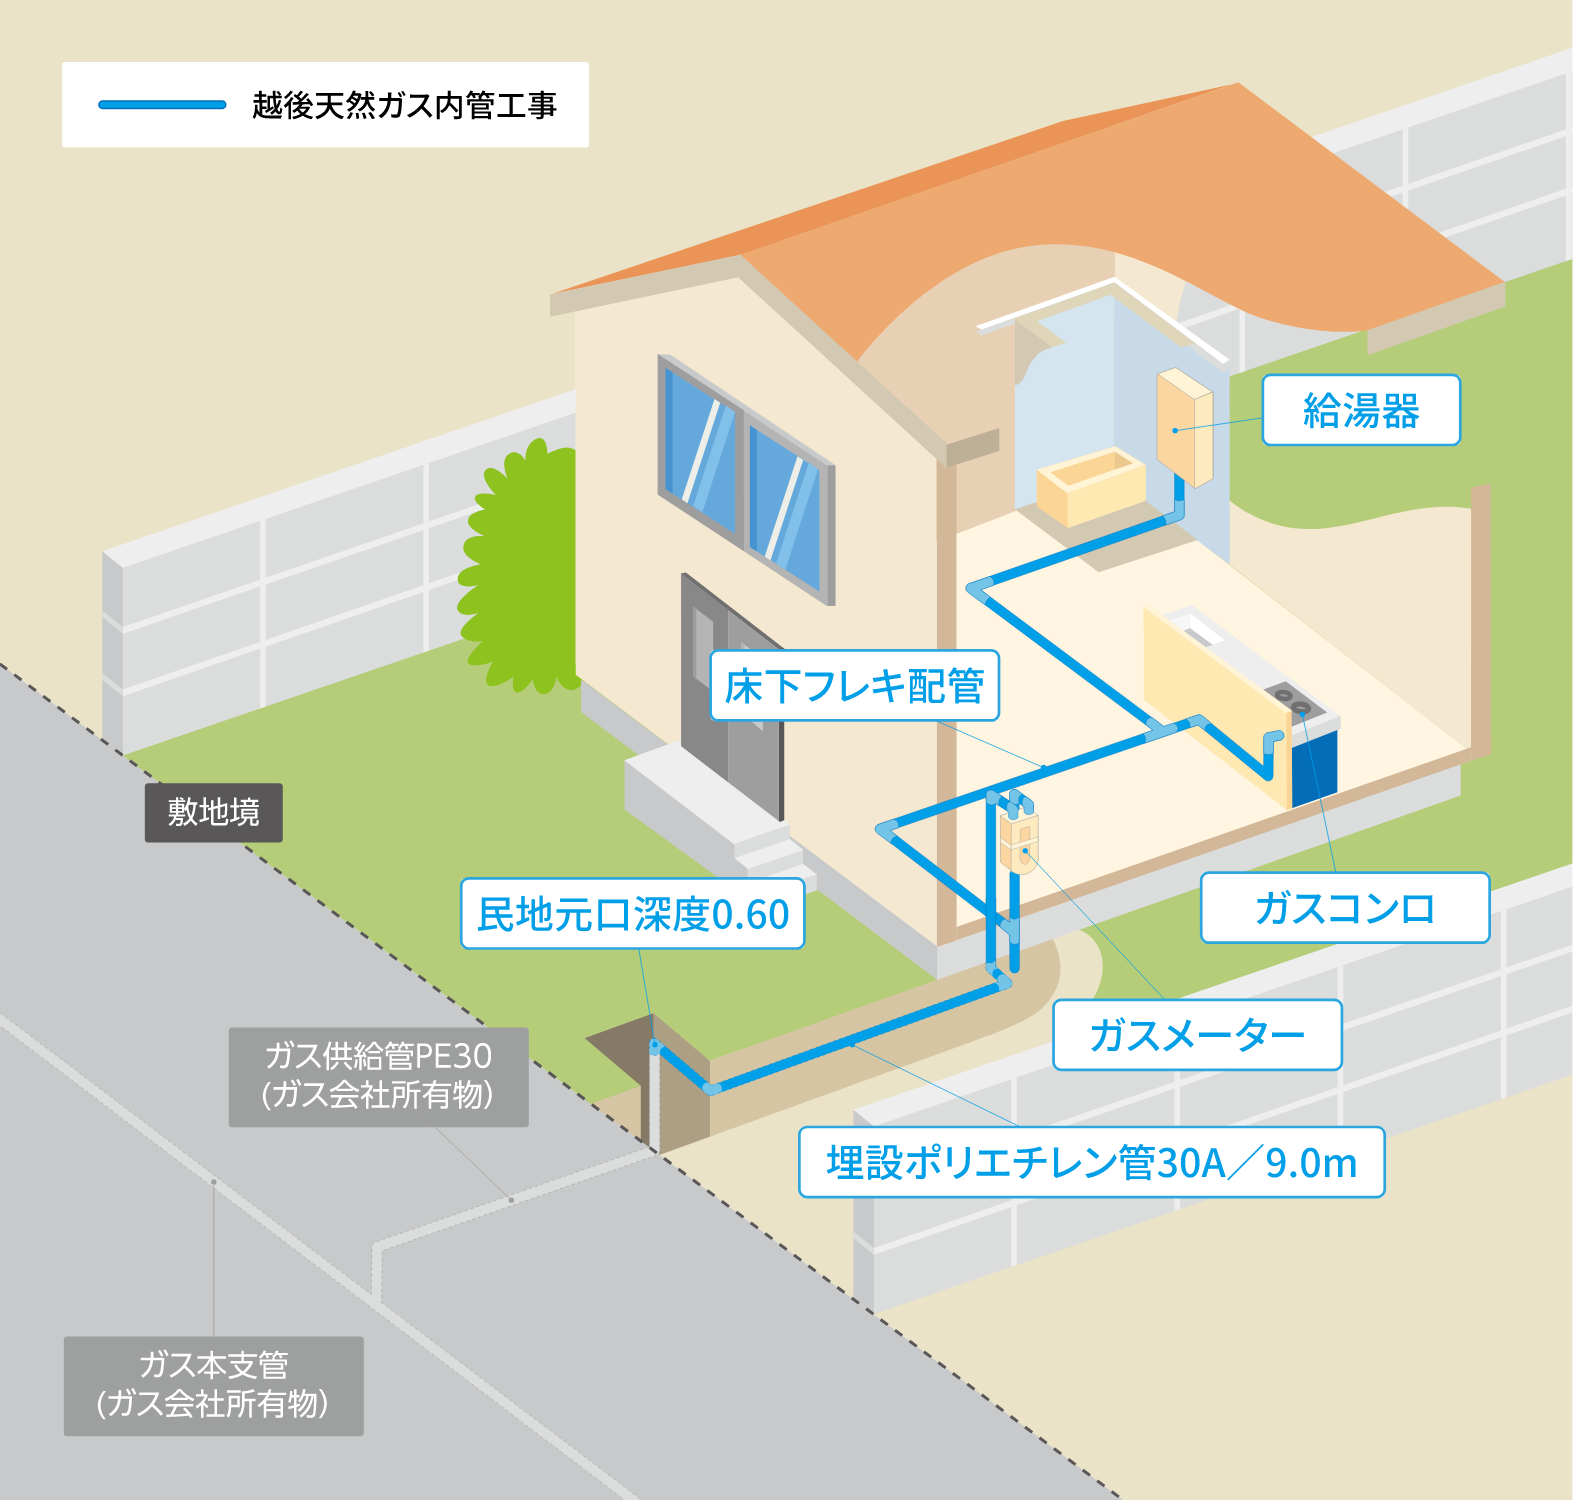 敷地内にガス引き込み管がある宅地に木造戸建住宅を新築する場合の概念図